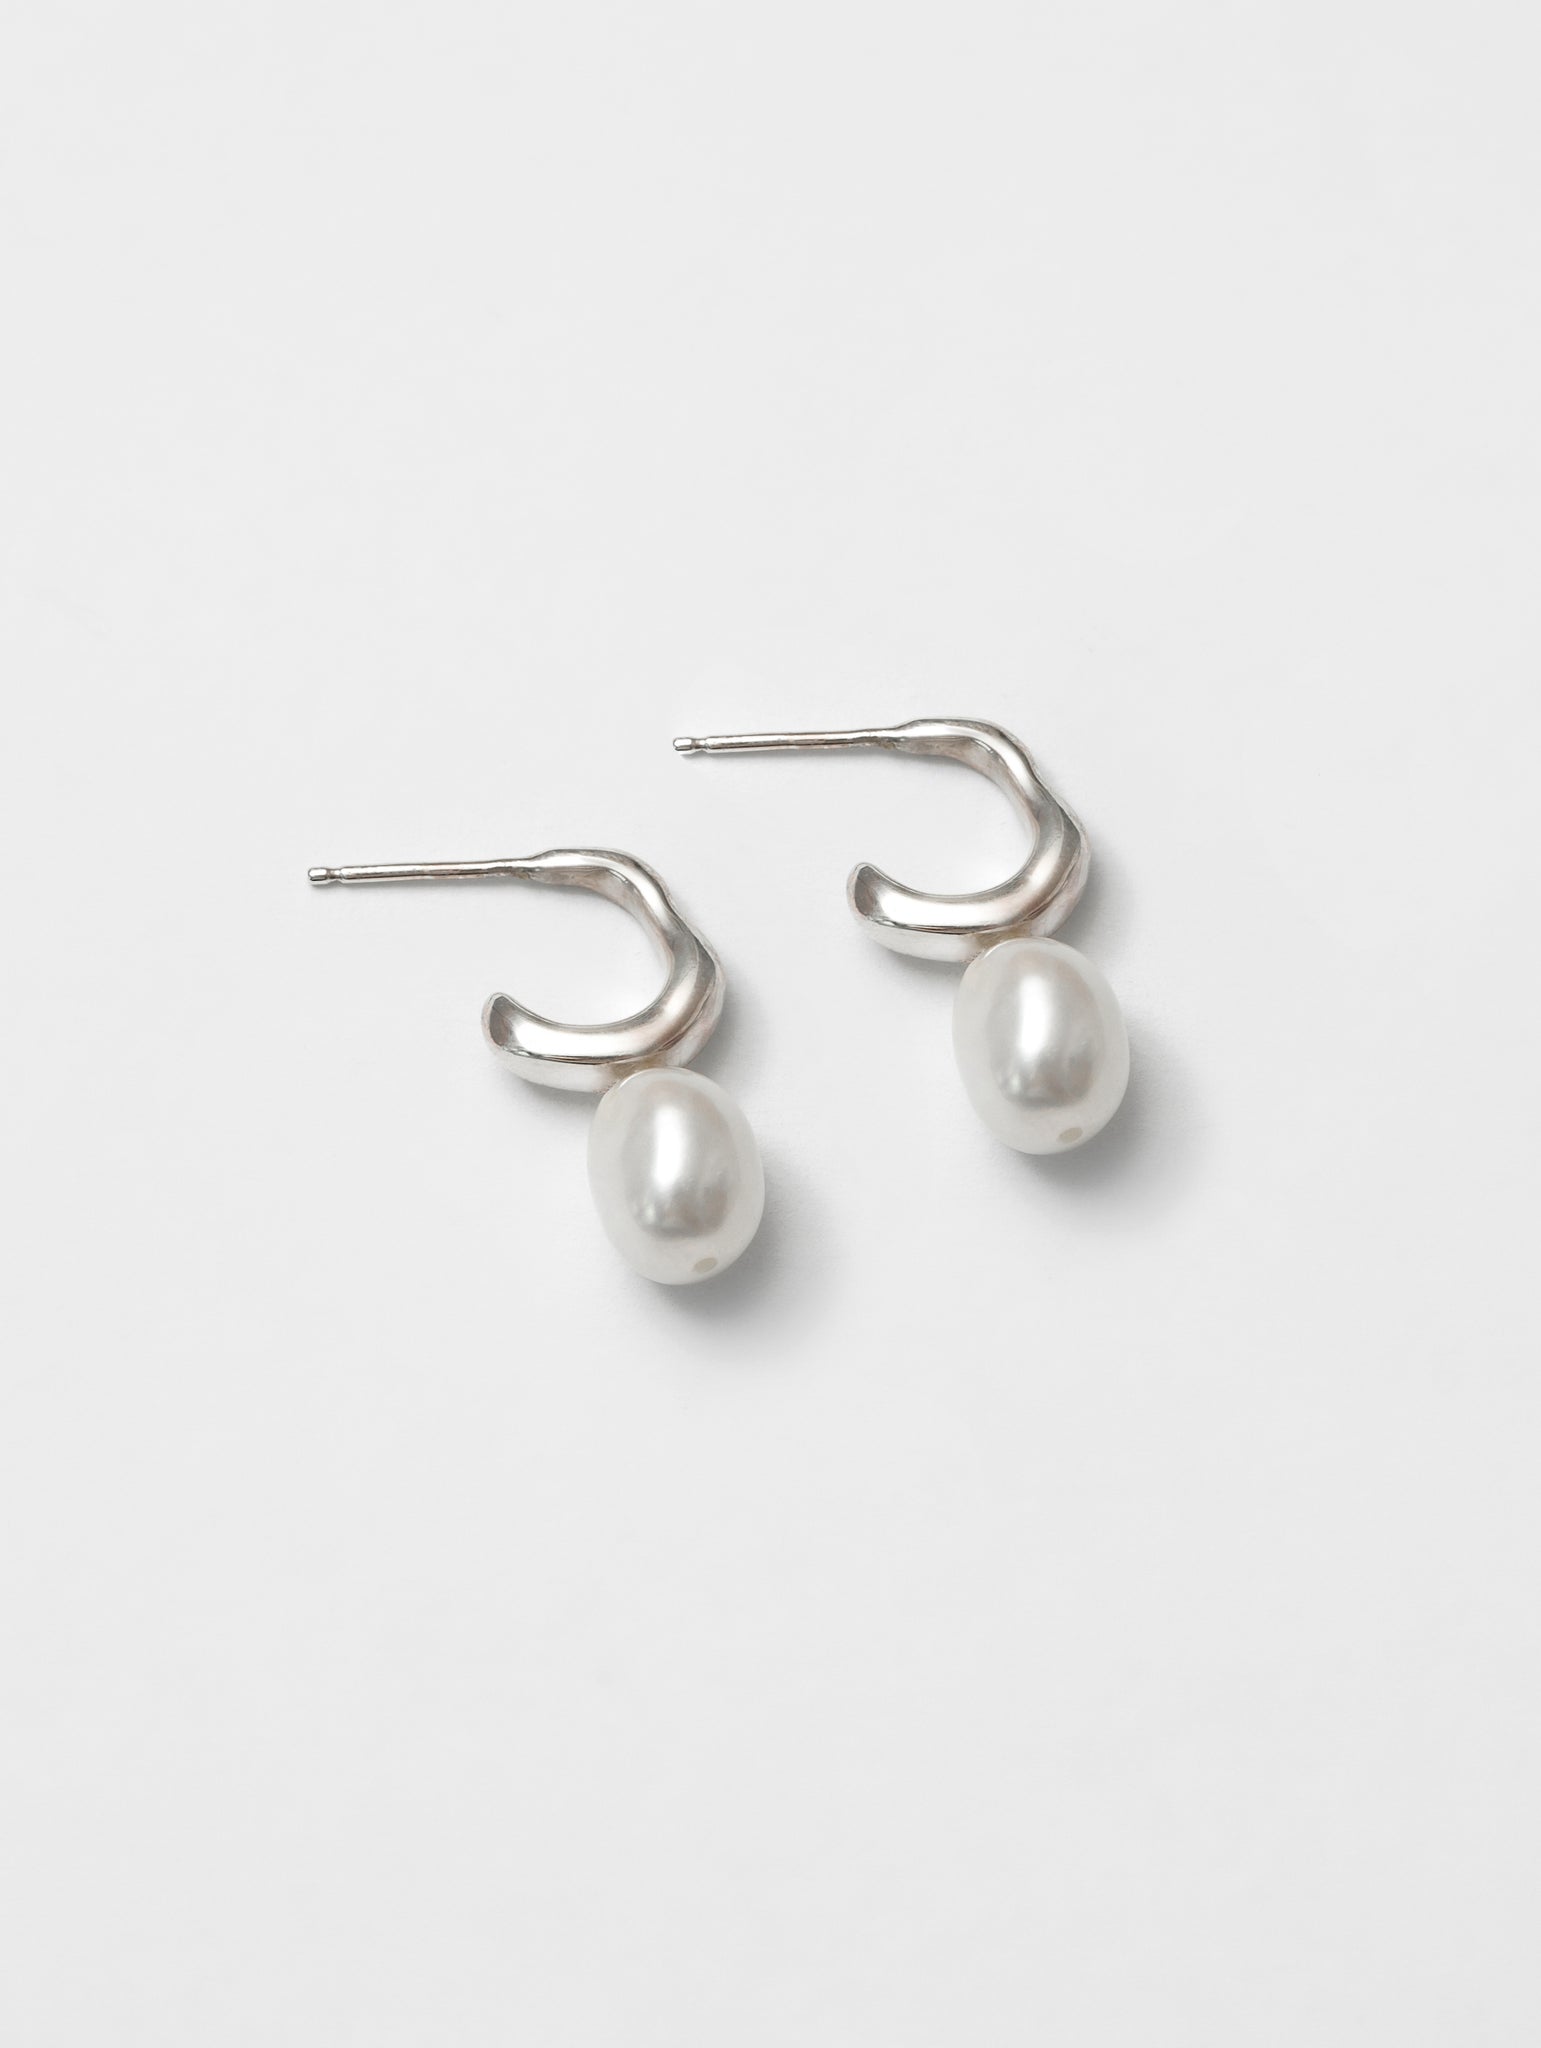 Emmy Earrings in Sterling Silver